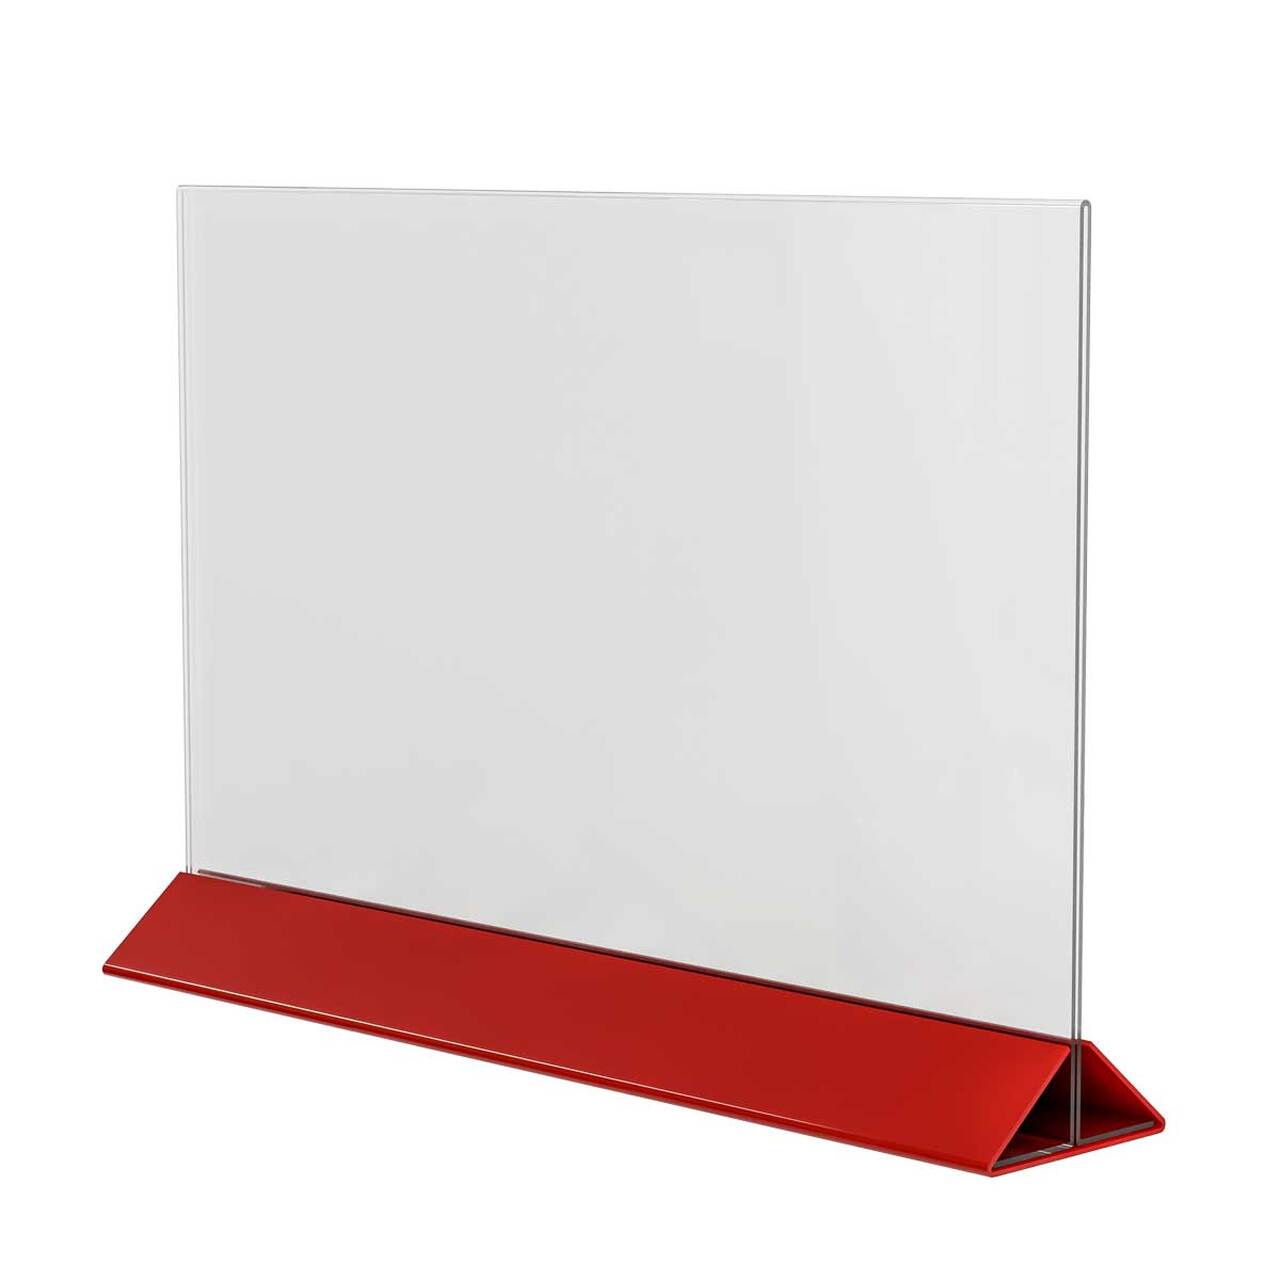 Menu Holder - Suport meniu din plexiglas cu bază roșie A3, JJ DISPLAYS, 297 x 420 mm, Landscape